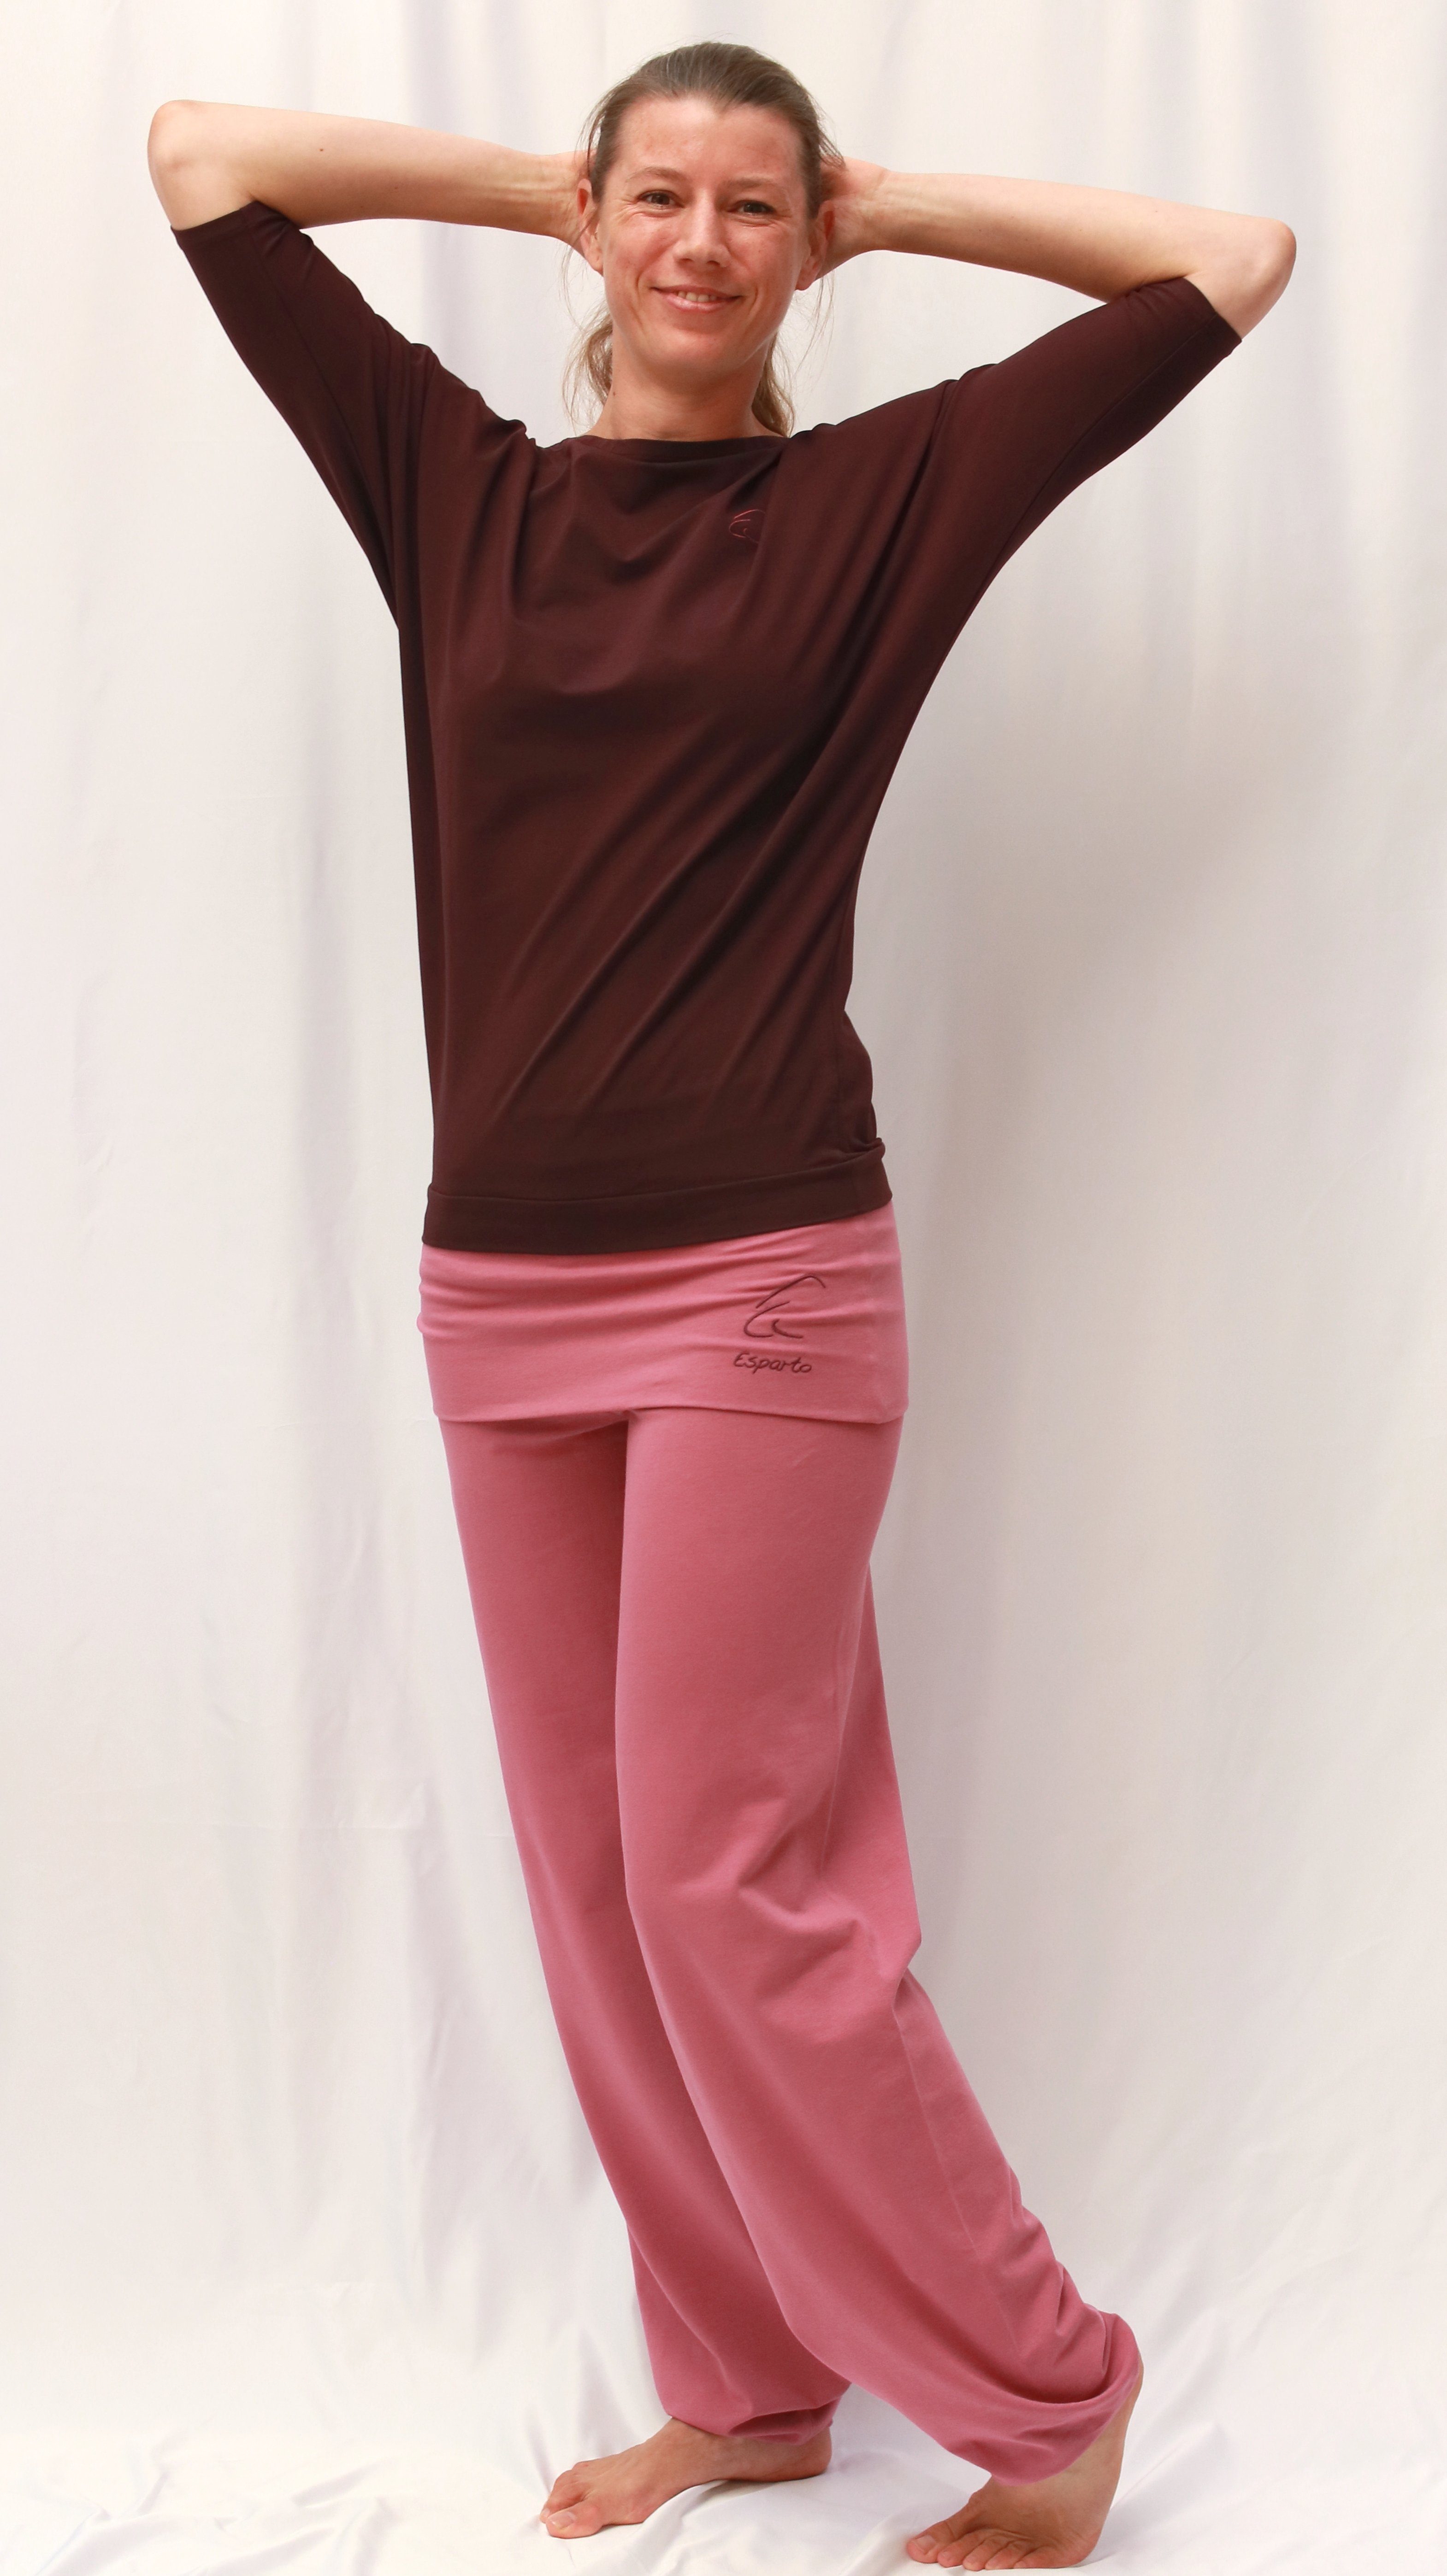 ESPARTO Yogashirt Halbarmshirt in mit Bio-Baumwolle breitem Sadaa Aubergine Schulterausschnitt (U-Boot-Ausschnitt) Wohlfühlshirt